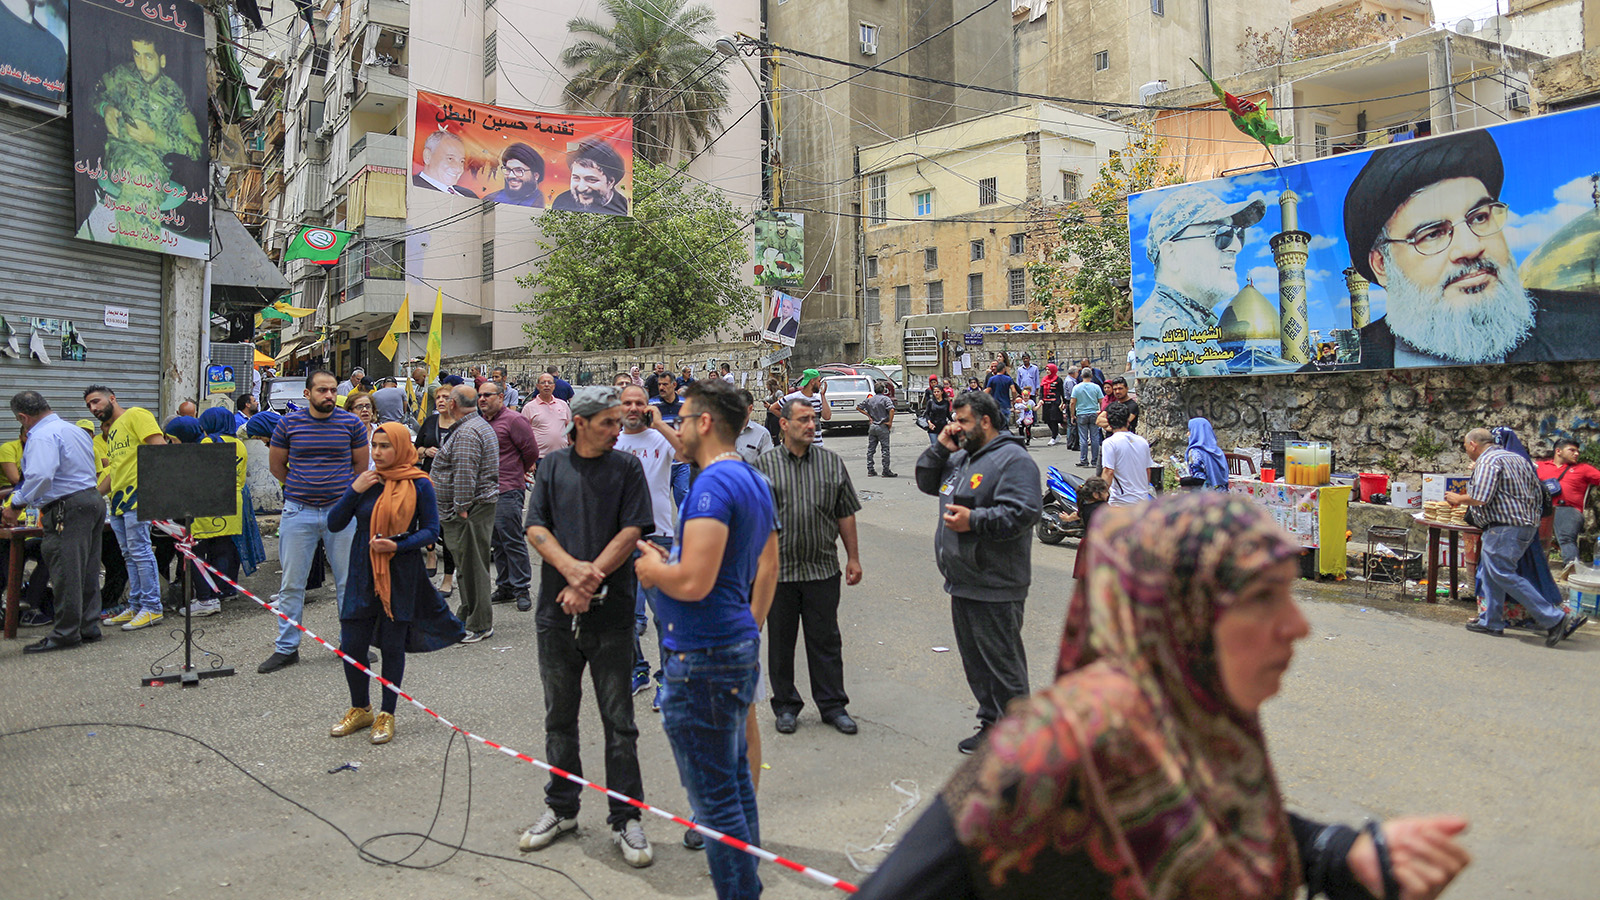 כרזות המראות את תמונתו של חסן נסראללה תלויות מחוץ למרכזי הצבעה בזמן הבחירות בלבנון. חיזבאללה צפויה להגביר את כוחה בפרלמנט הלבנוני. (AP Photo/Hassan Ammar)